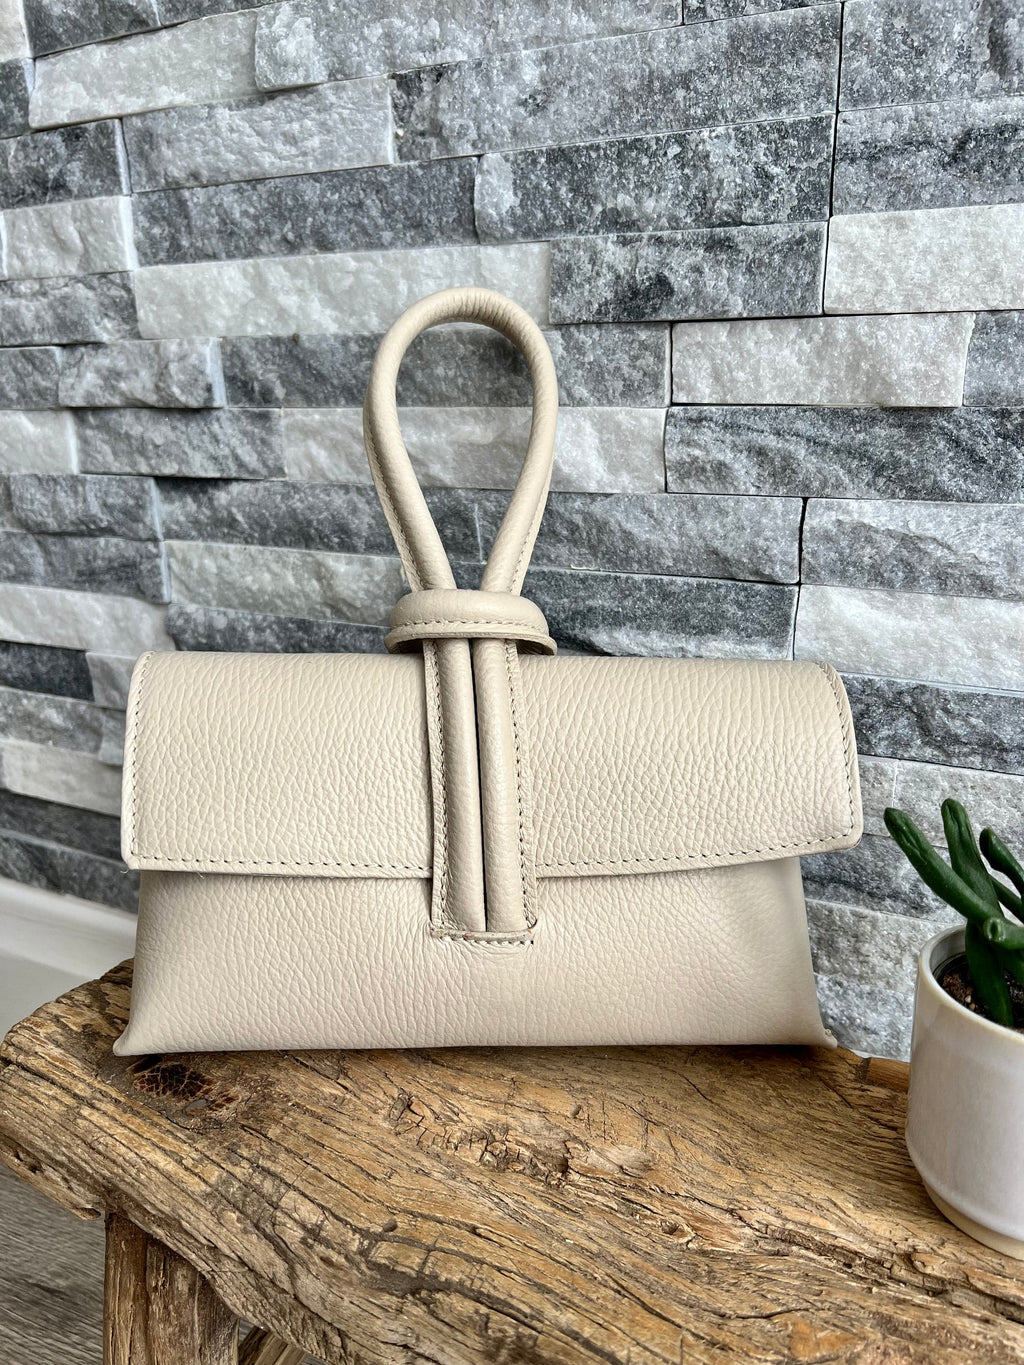 lusciousscarves Handbags Cream Italian Leather Clutch Bag